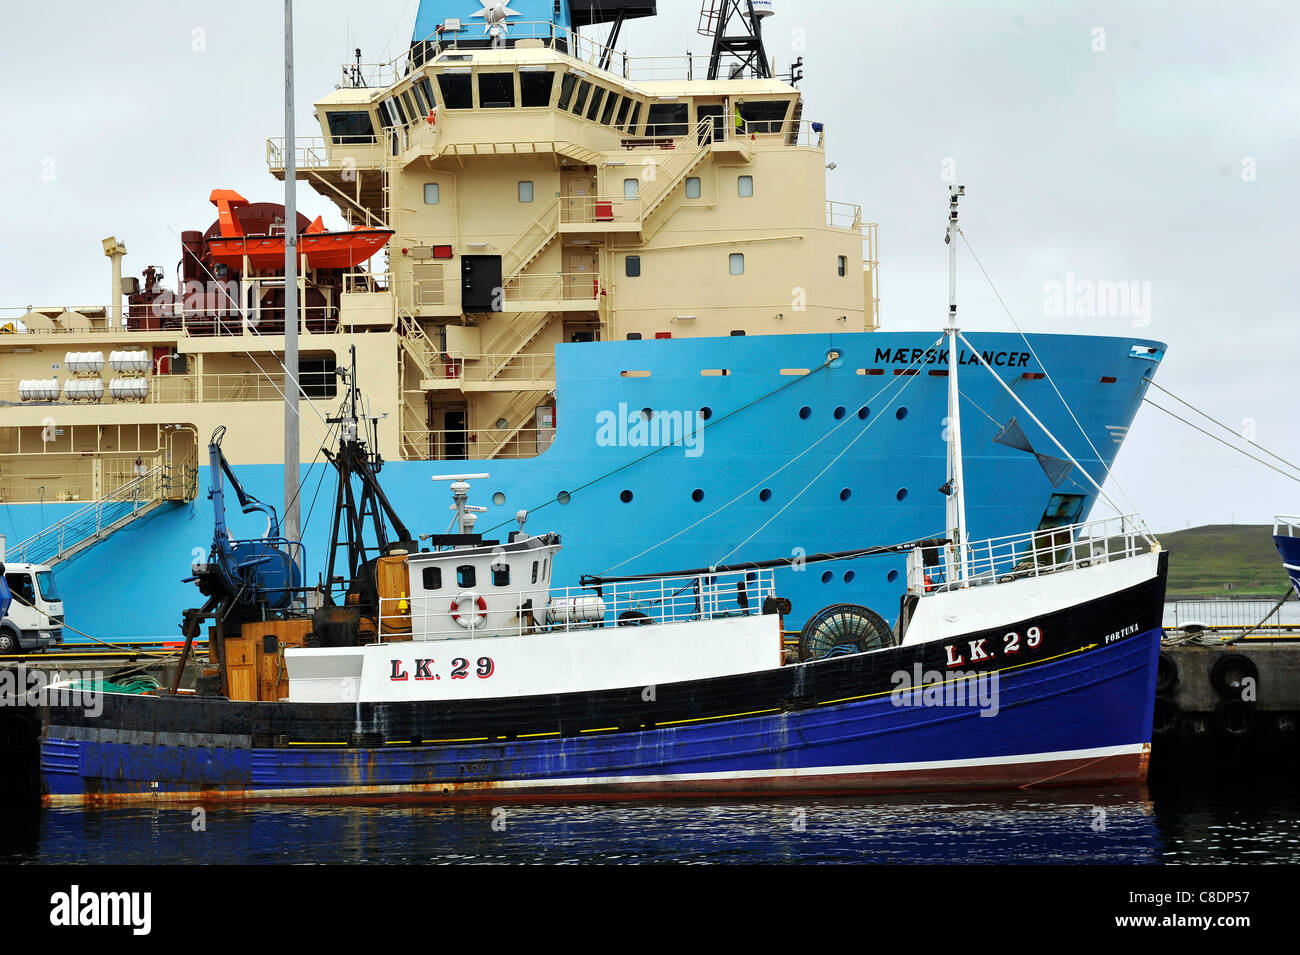 La nave Maersk Lancer ormeggiata nel porto di Lerwick, isole Shetland, Scozia. Foto Stock